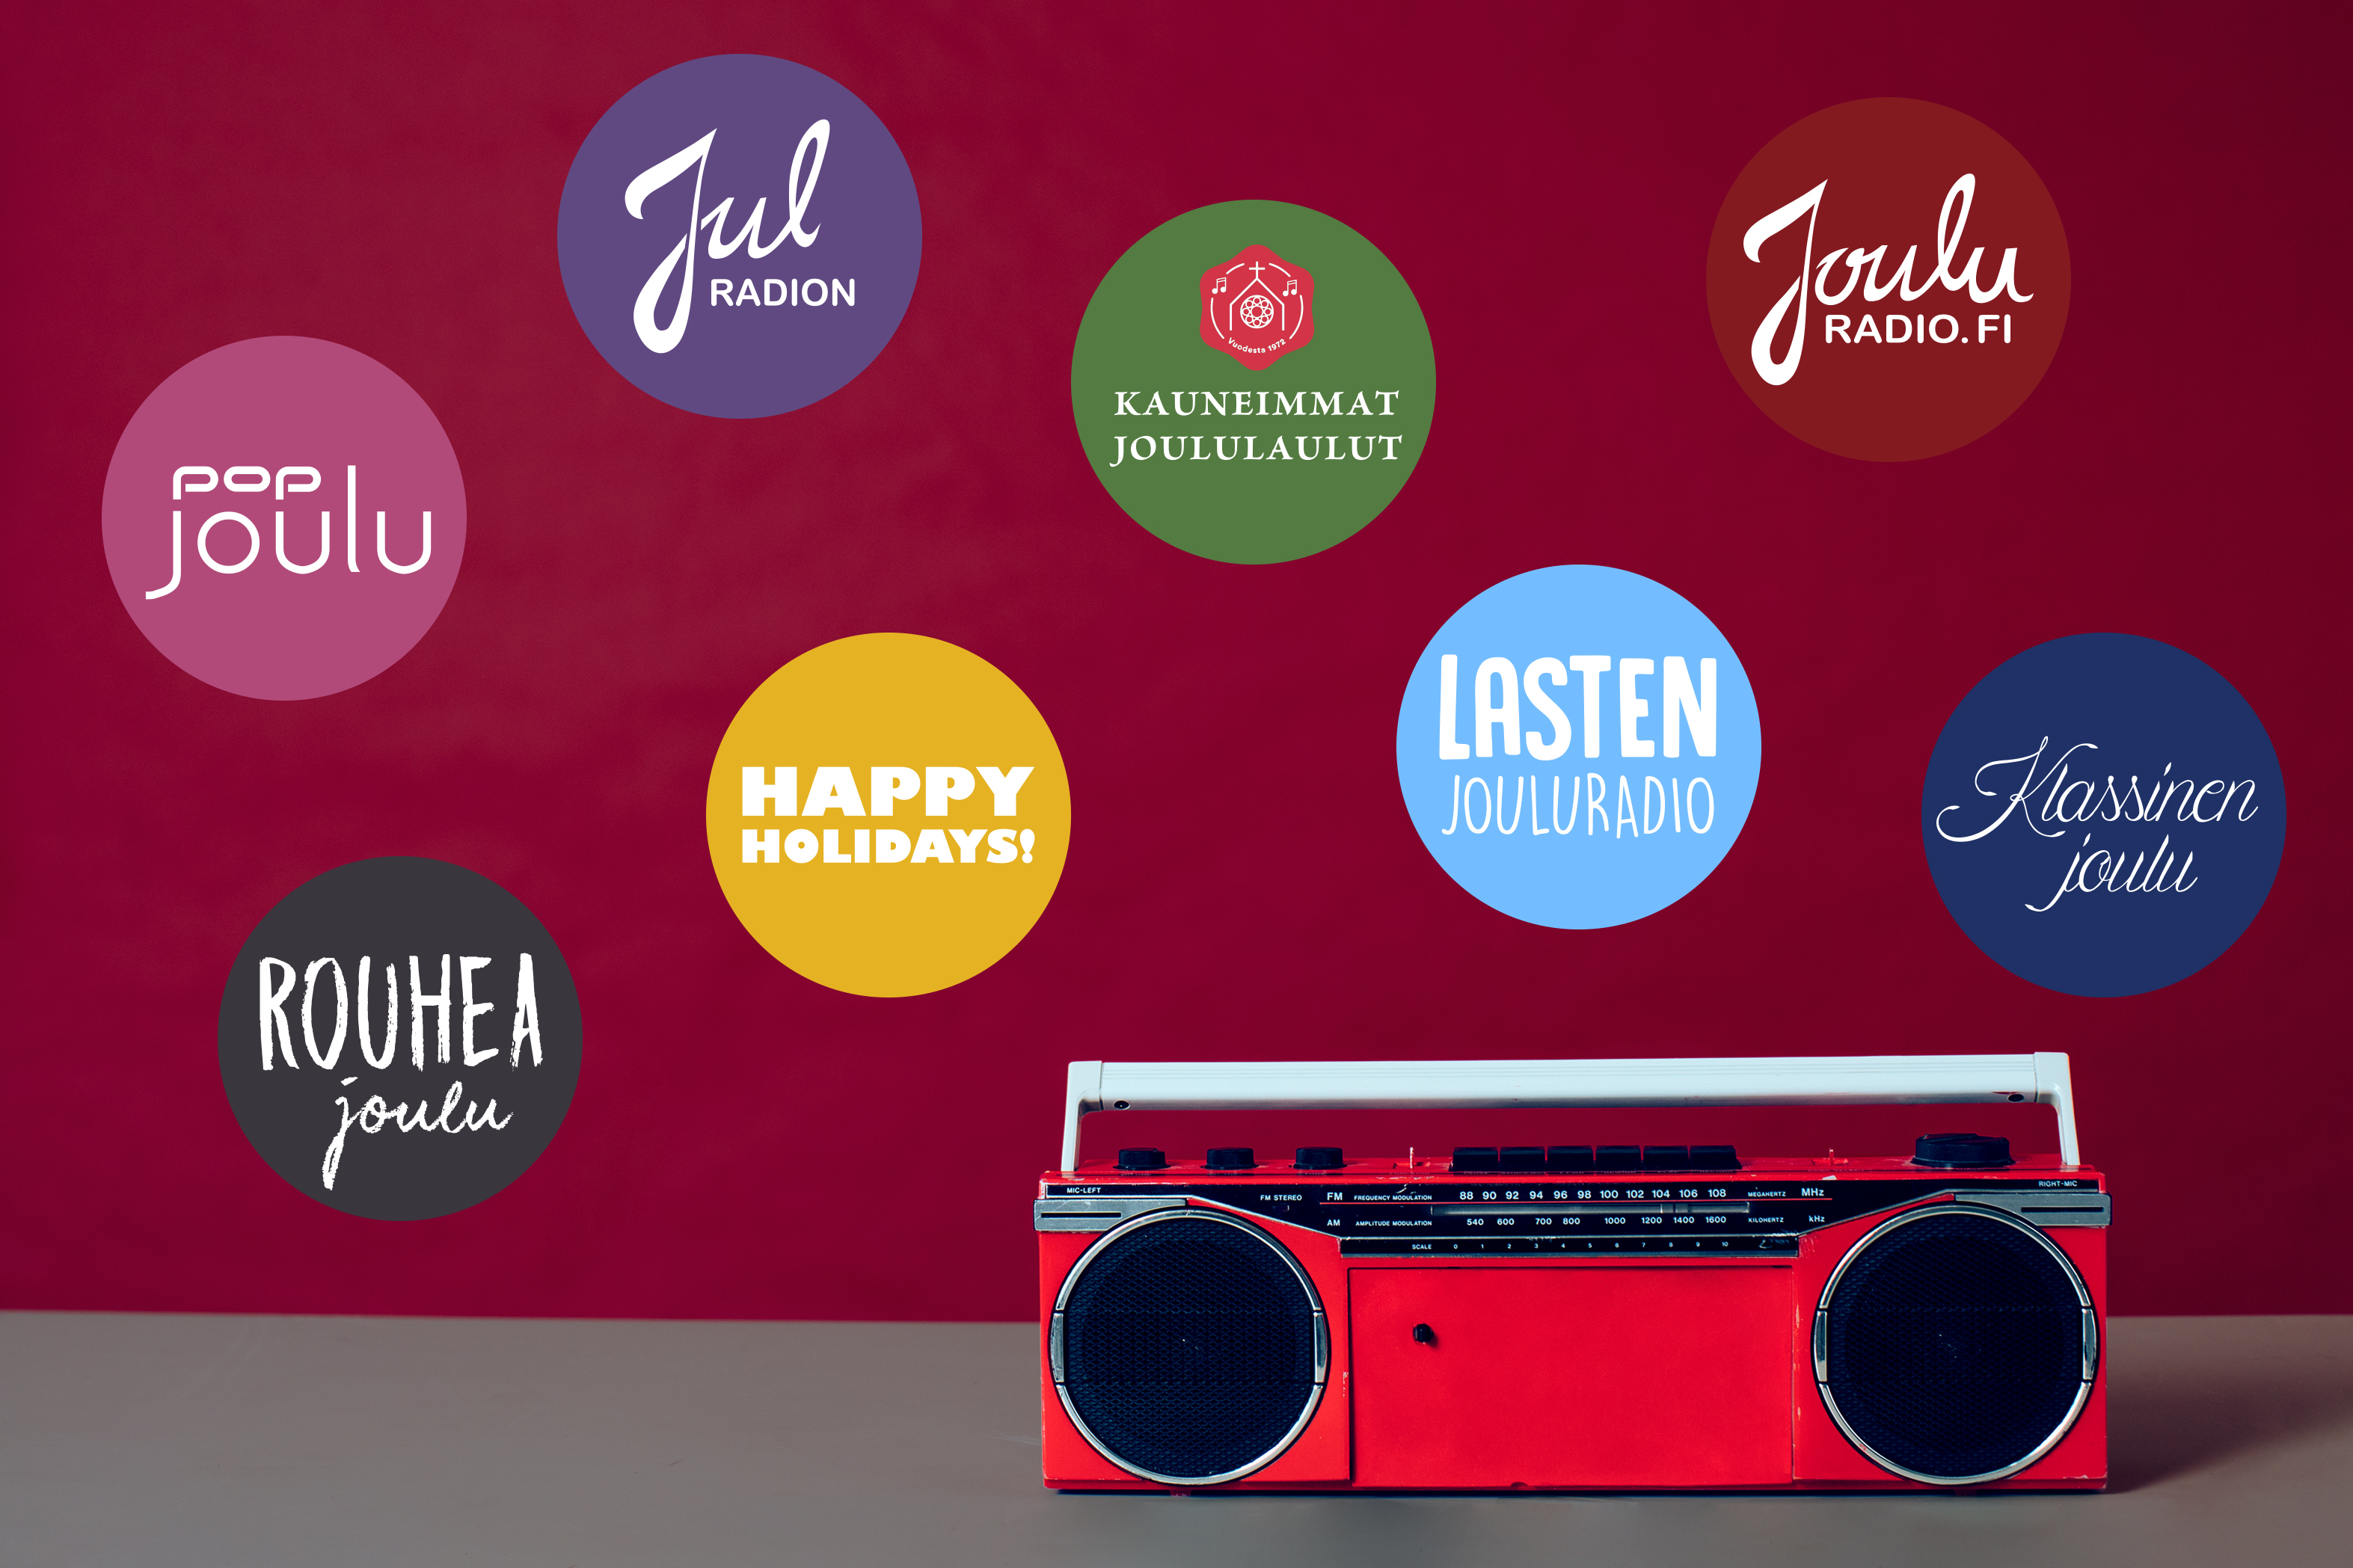 Kuvassa on Jouluradion mainoskuva, jossa punainen radio ja kaikki kanavat.